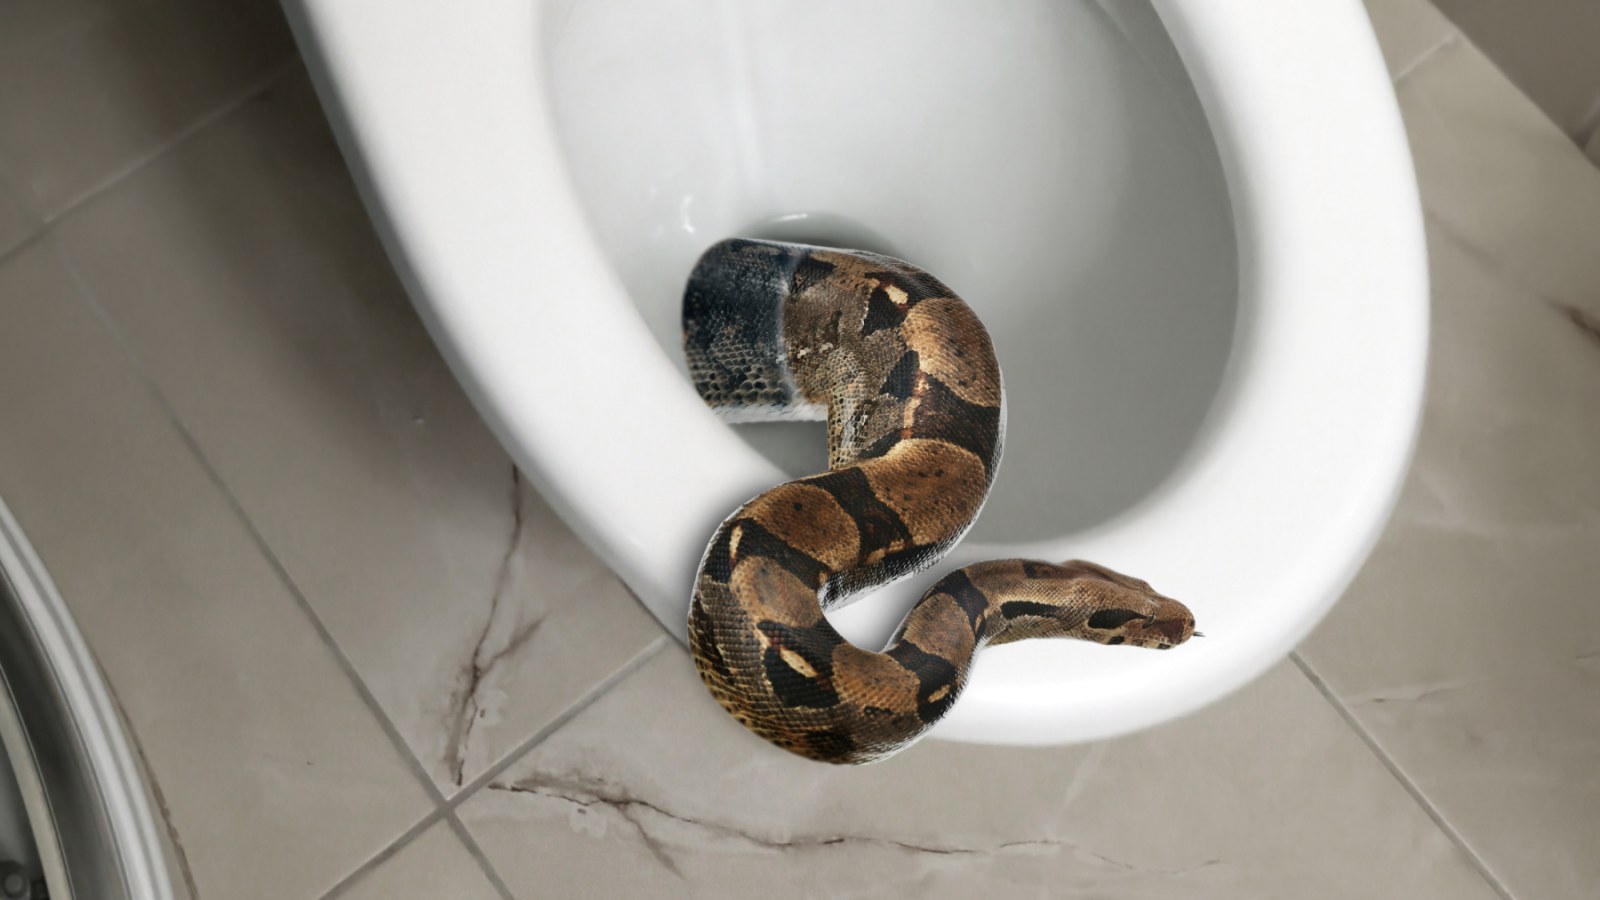 https://d.newsweek.com/en/full/2211788/snake-toilet.jpg?w=1600&h=900&q=88&f=55518d6ee8fc6f3e3cb879fbd99c40ed